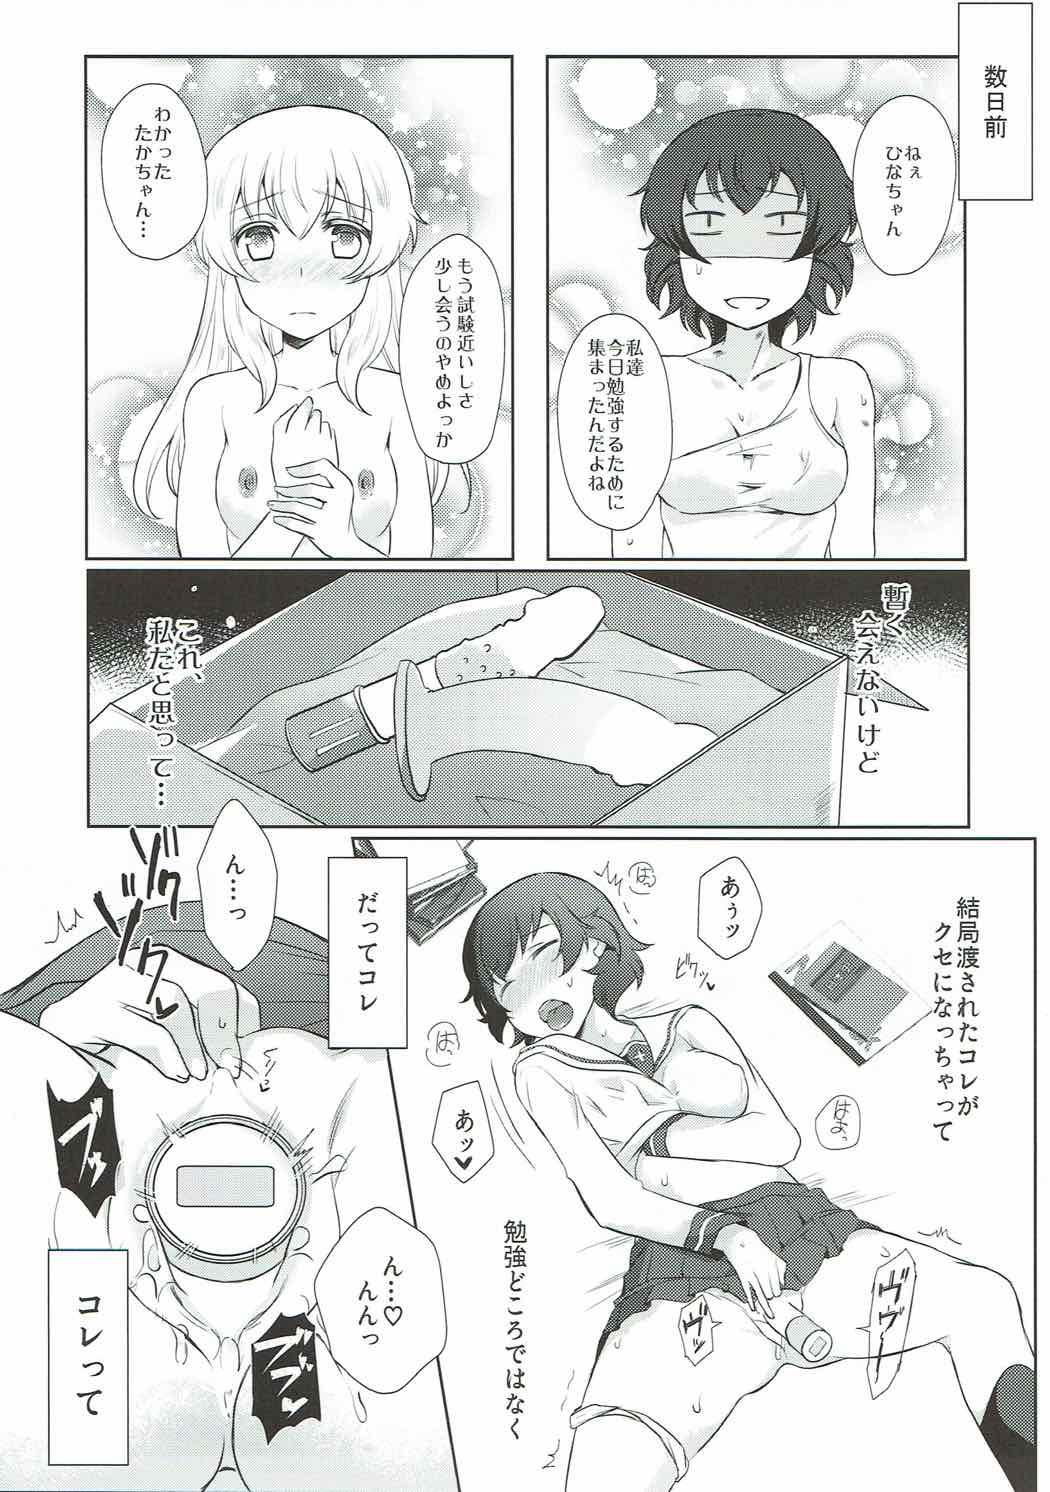 Dad Dakara Watashi wa Sotsugyou dekinai! - Girls und panzer Picked Up - Page 4